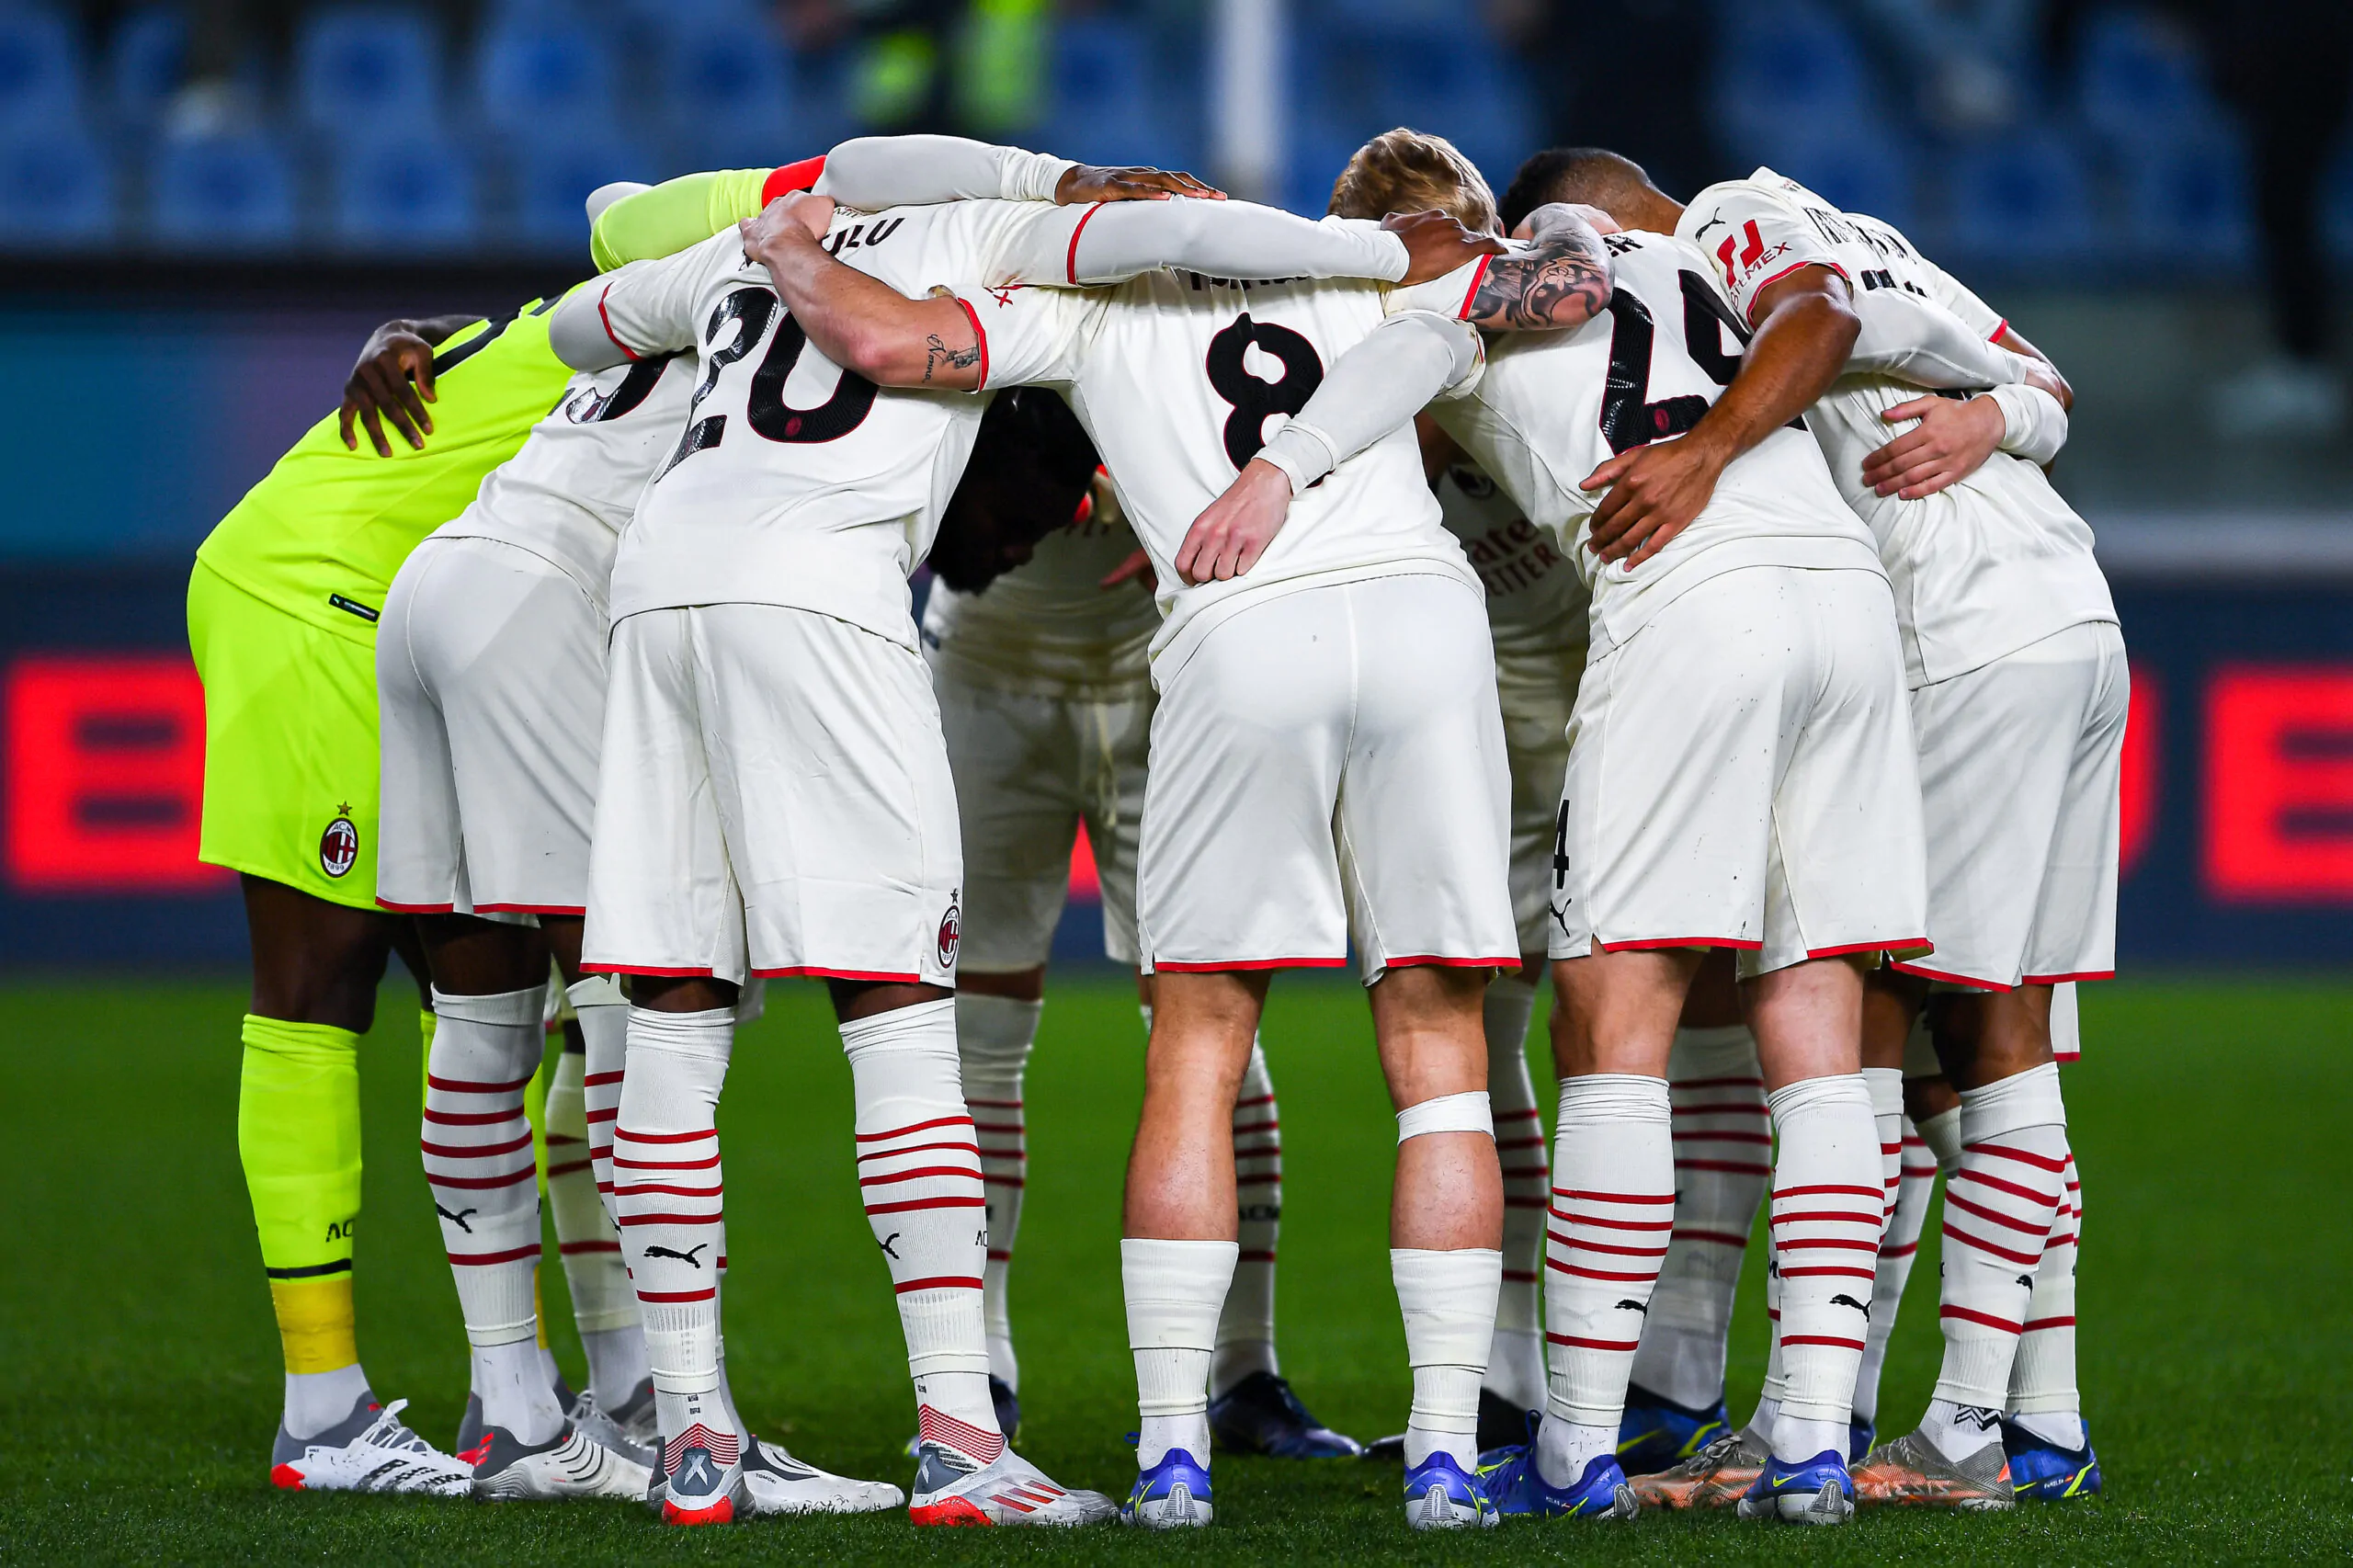 “Il Milan si sta godendo un grande giocatore”, le parole dell’allenatore sul talento rossonero